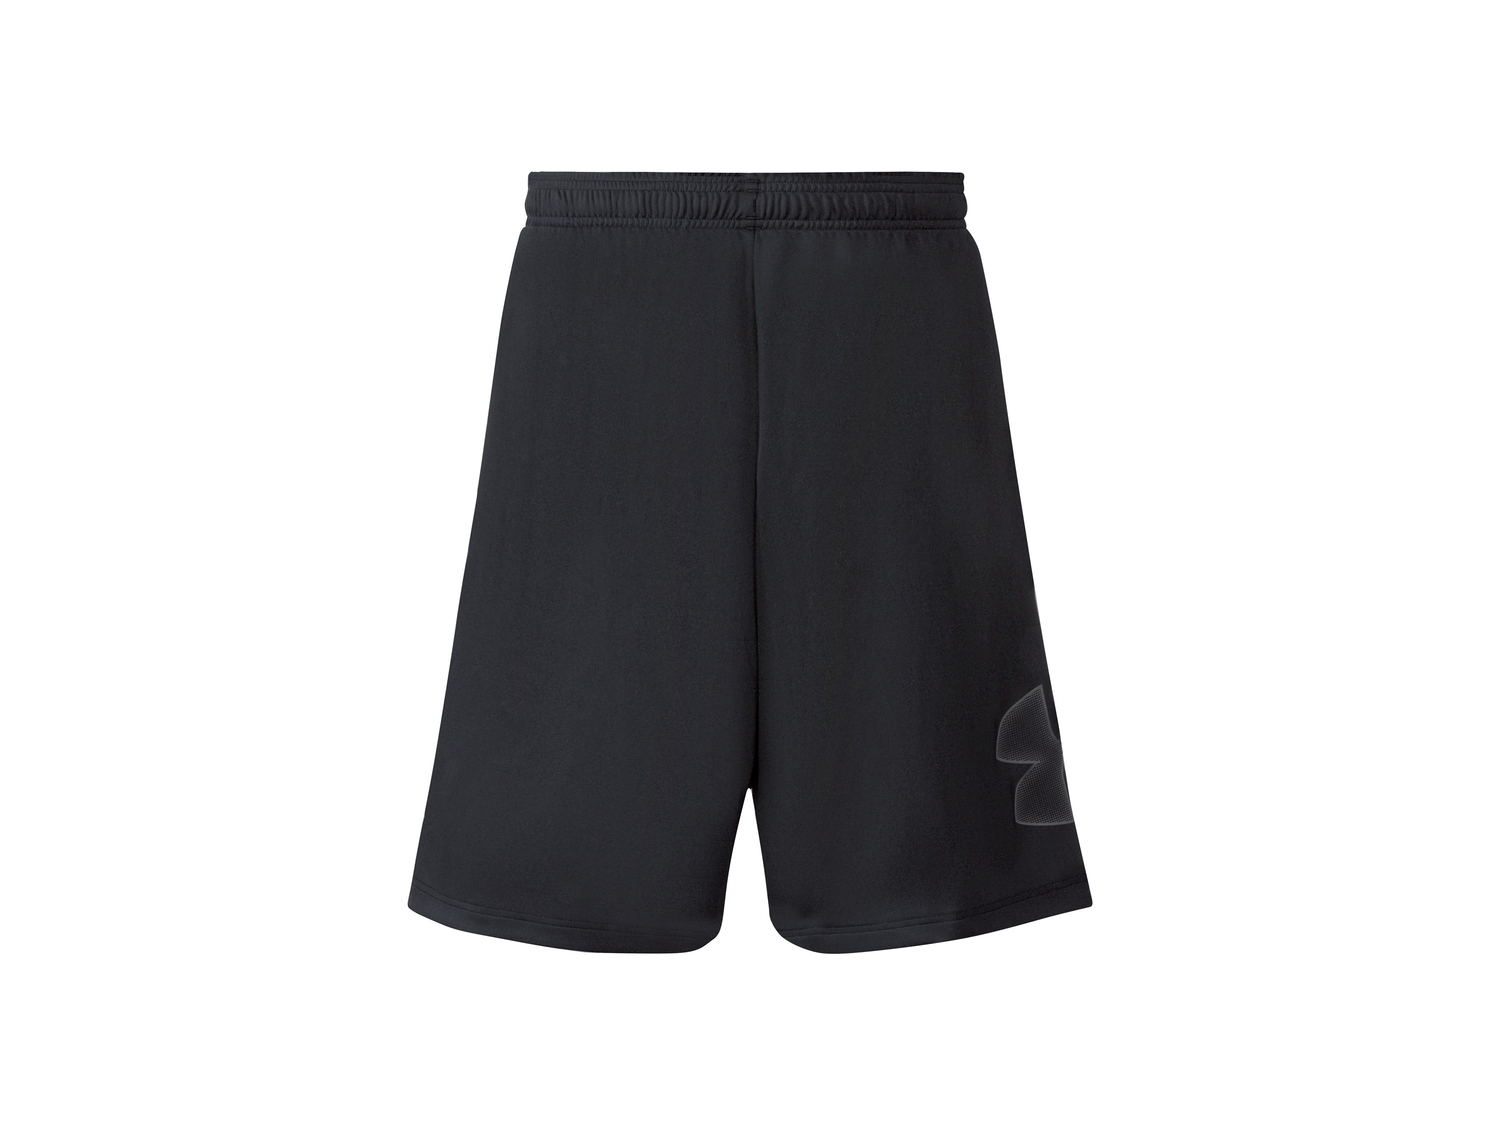 Shorts sportivi da uomo , prezzo 19.99 €  
Misure: M-XXL
Taglie disponibili